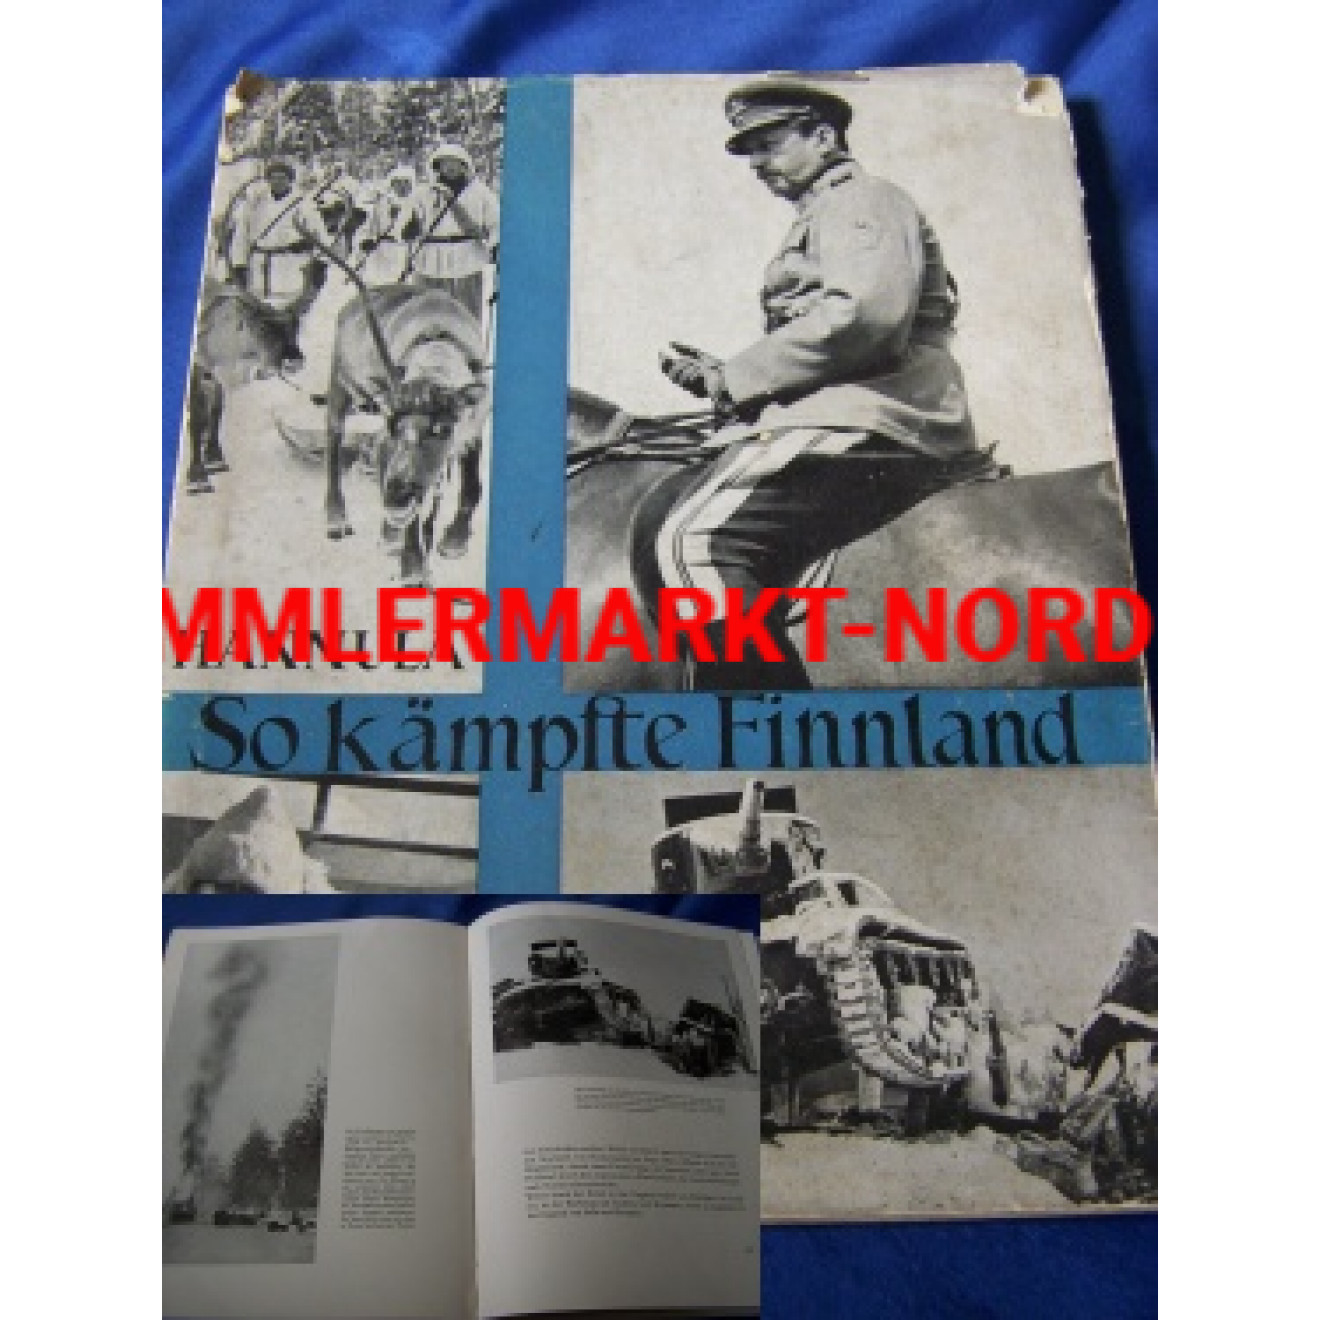 Bildband "So kämpfte Finnland - Der finnisch-sowjetische Krieg 1